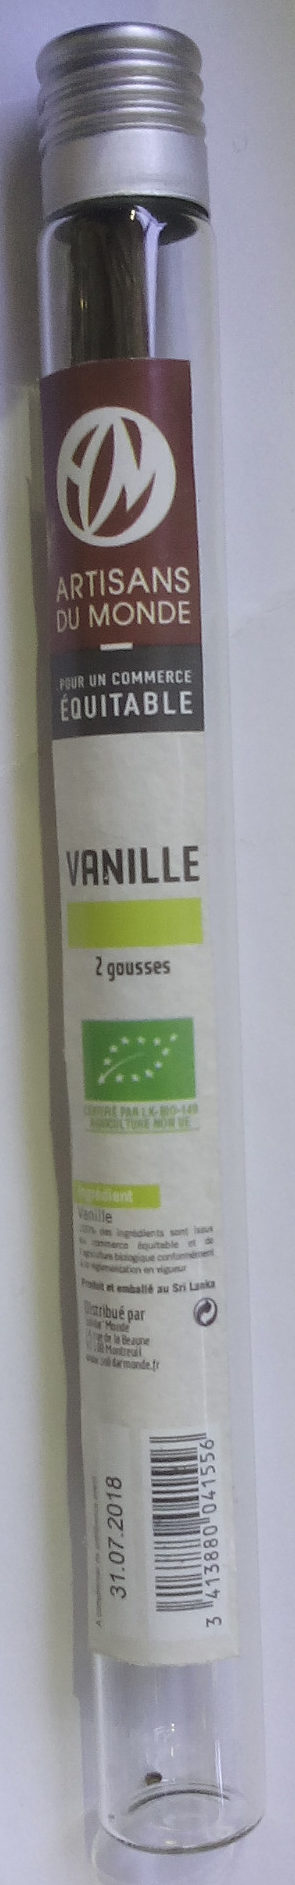 Gousses de Vanille - Product - fr